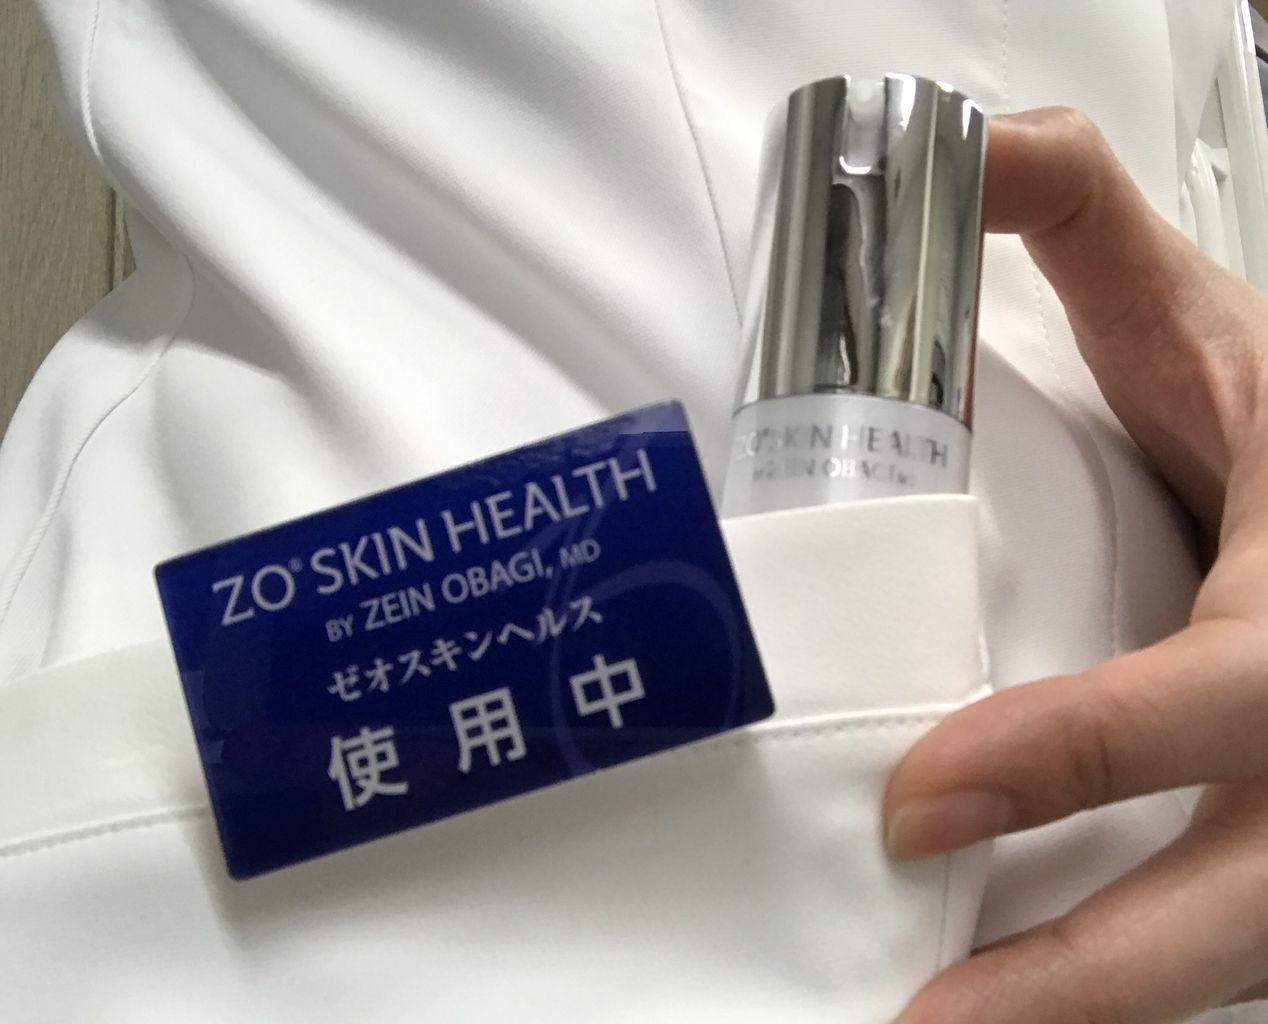 デイリーPD入荷しました : 茨城県ひたちなか市伊藤医院 皮膚科・美容皮膚科のblog